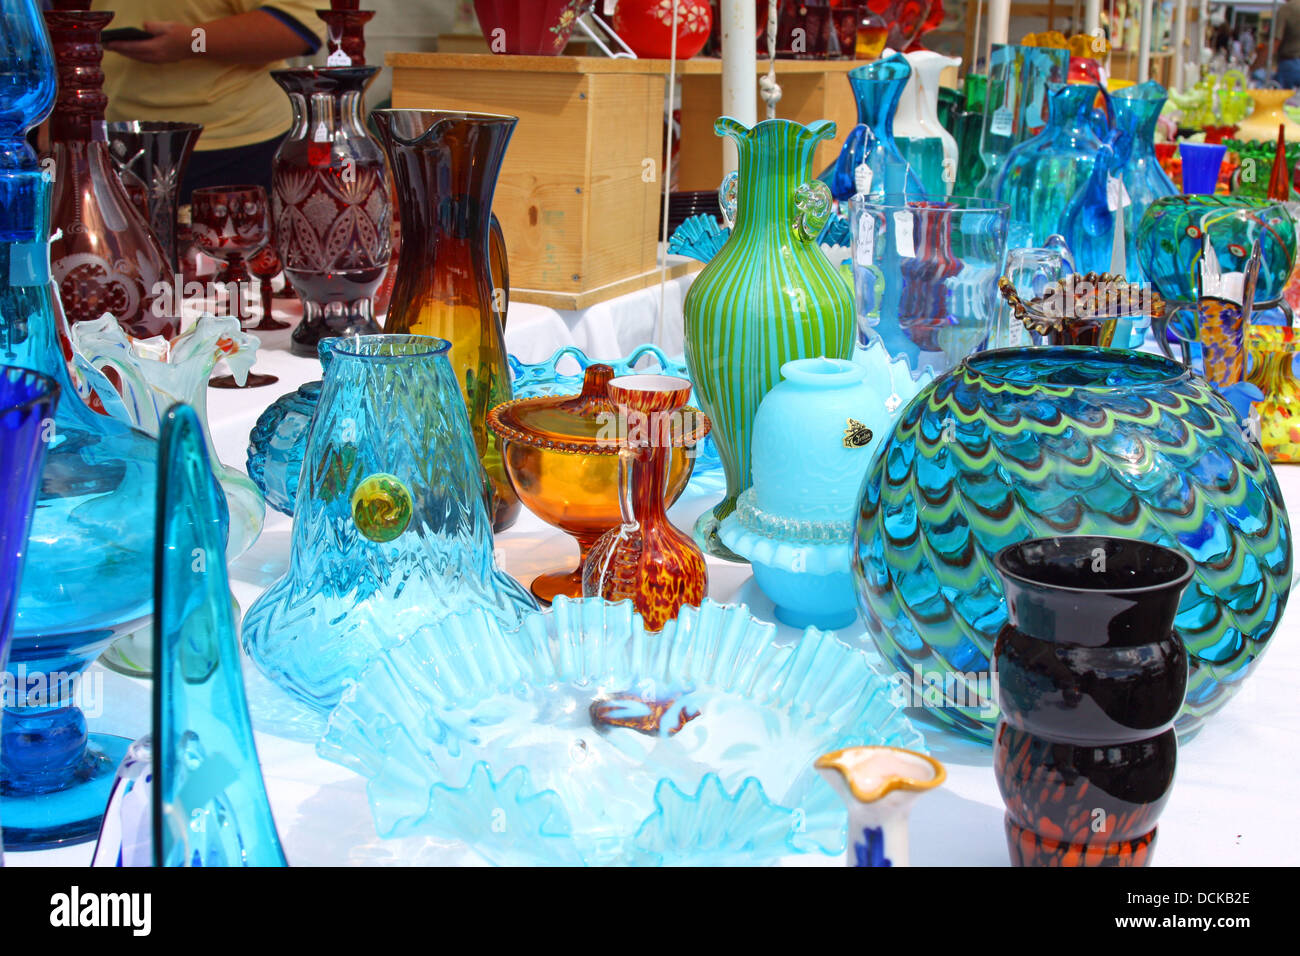 Collection de verrerie vintage coloré est affichée sur un tableau vente à un marché aux puces d'Antiquités Banque D'Images